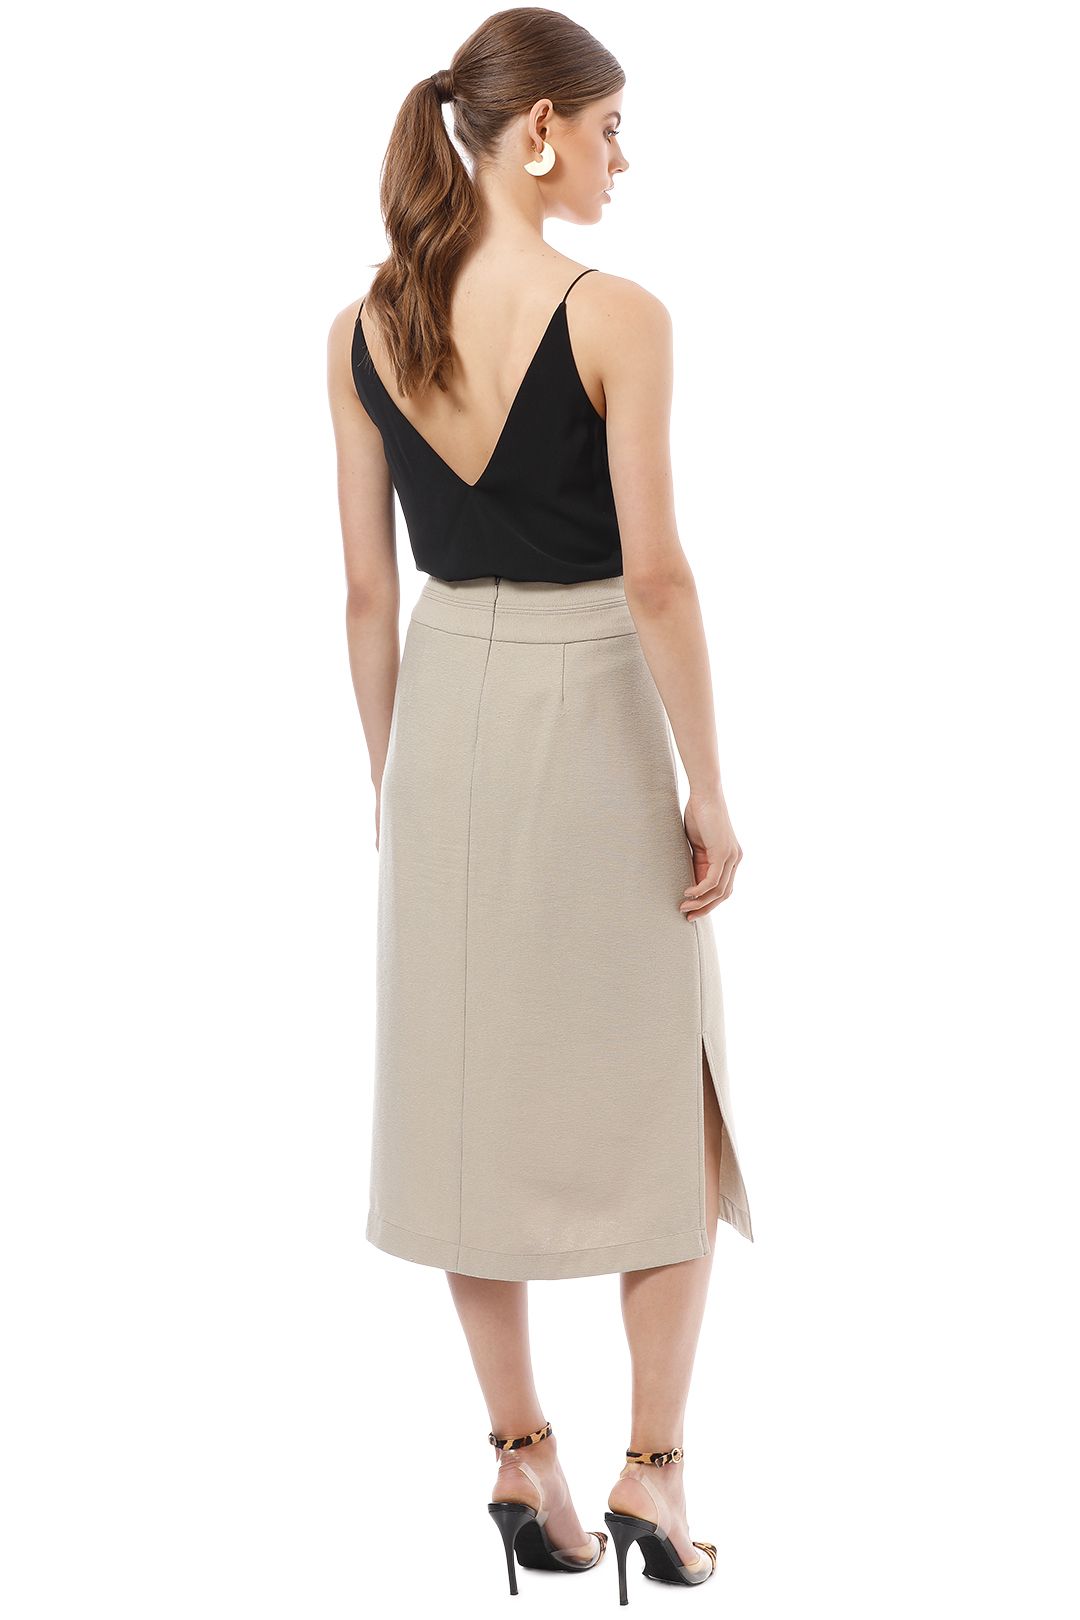 Veronika Maine - Textured Button Up Skirt - Beige - Back